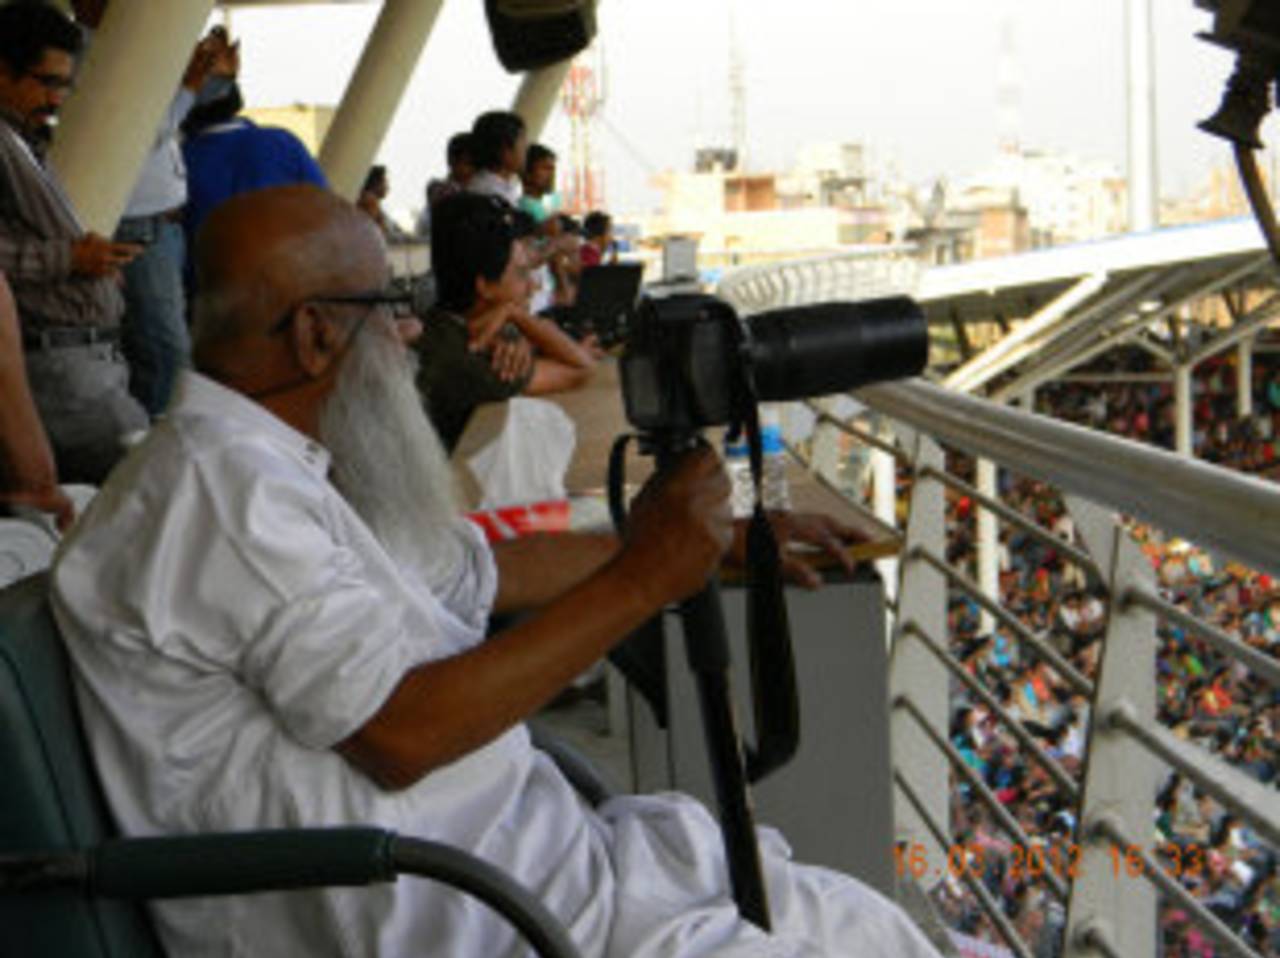 Al Haj Mahammad Zahirul Haq, around 80, was determined to capture Sachin Tendulkar reaching his 100th ton&nbsp;&nbsp;&bull;&nbsp;&nbsp;ESPNcricinfo Ltd